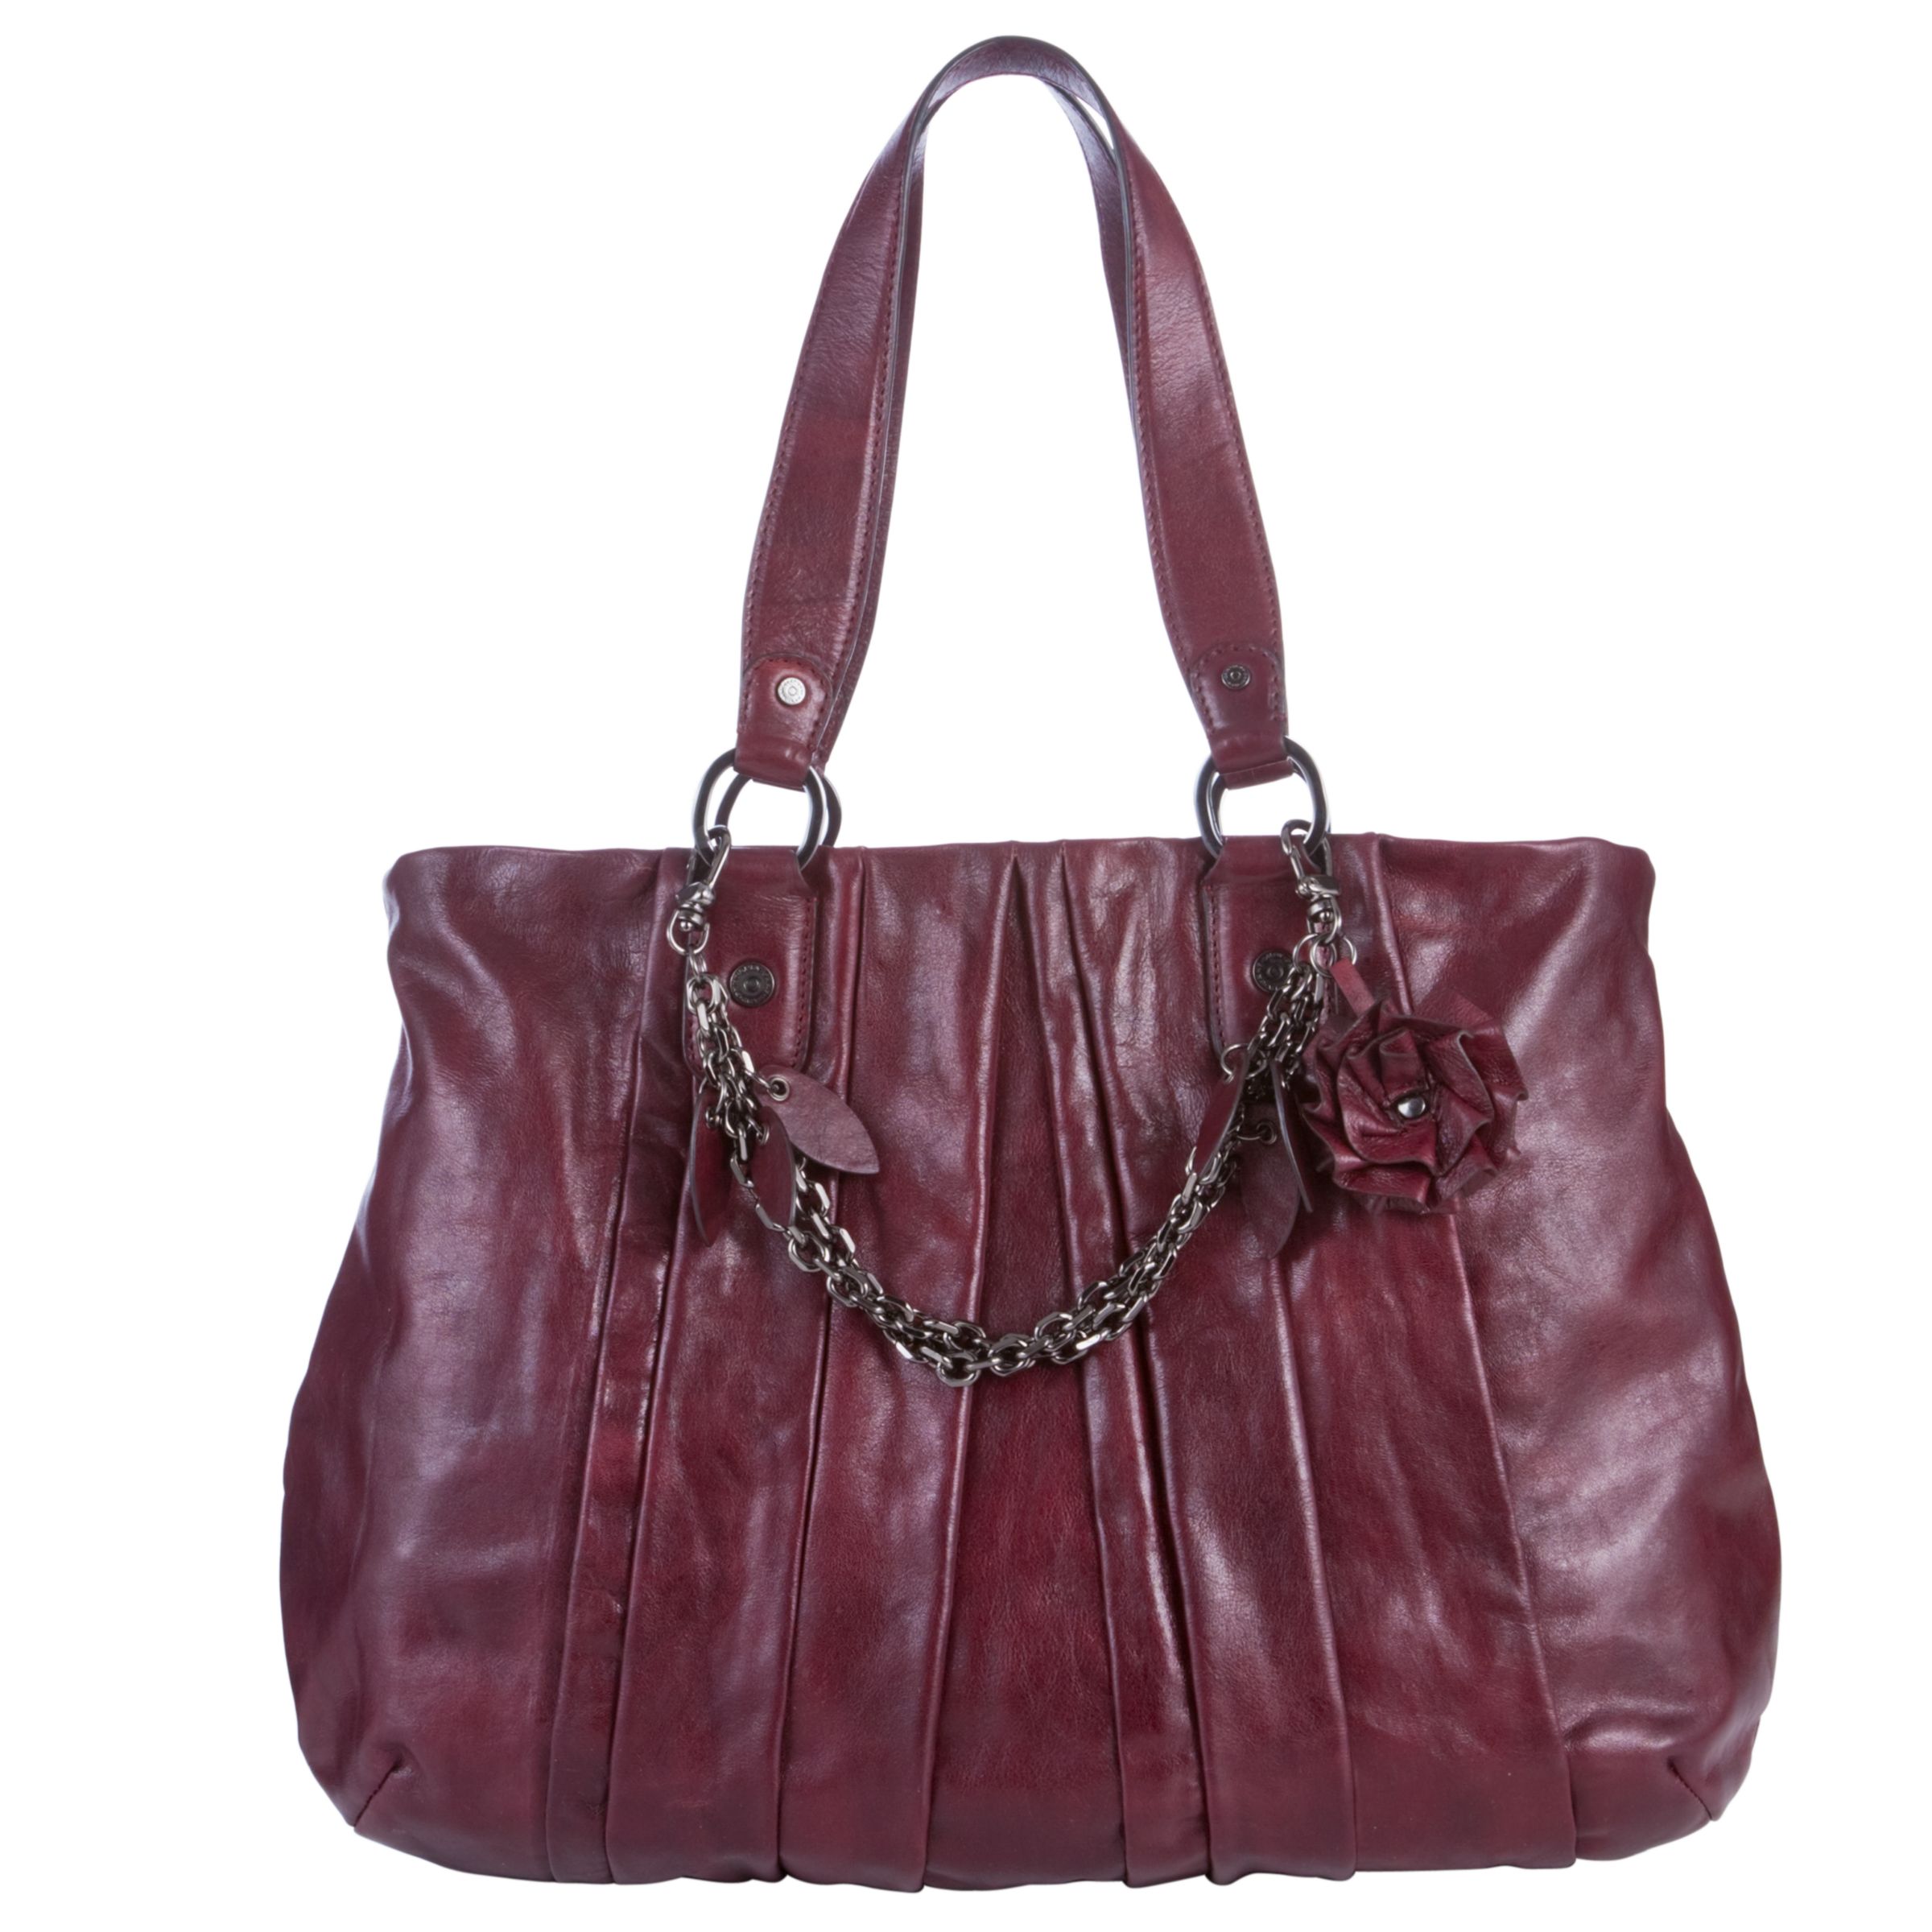 DKNY Burnished Leather Pleated Large Shopper Handbag, Burgundy at John Lewis